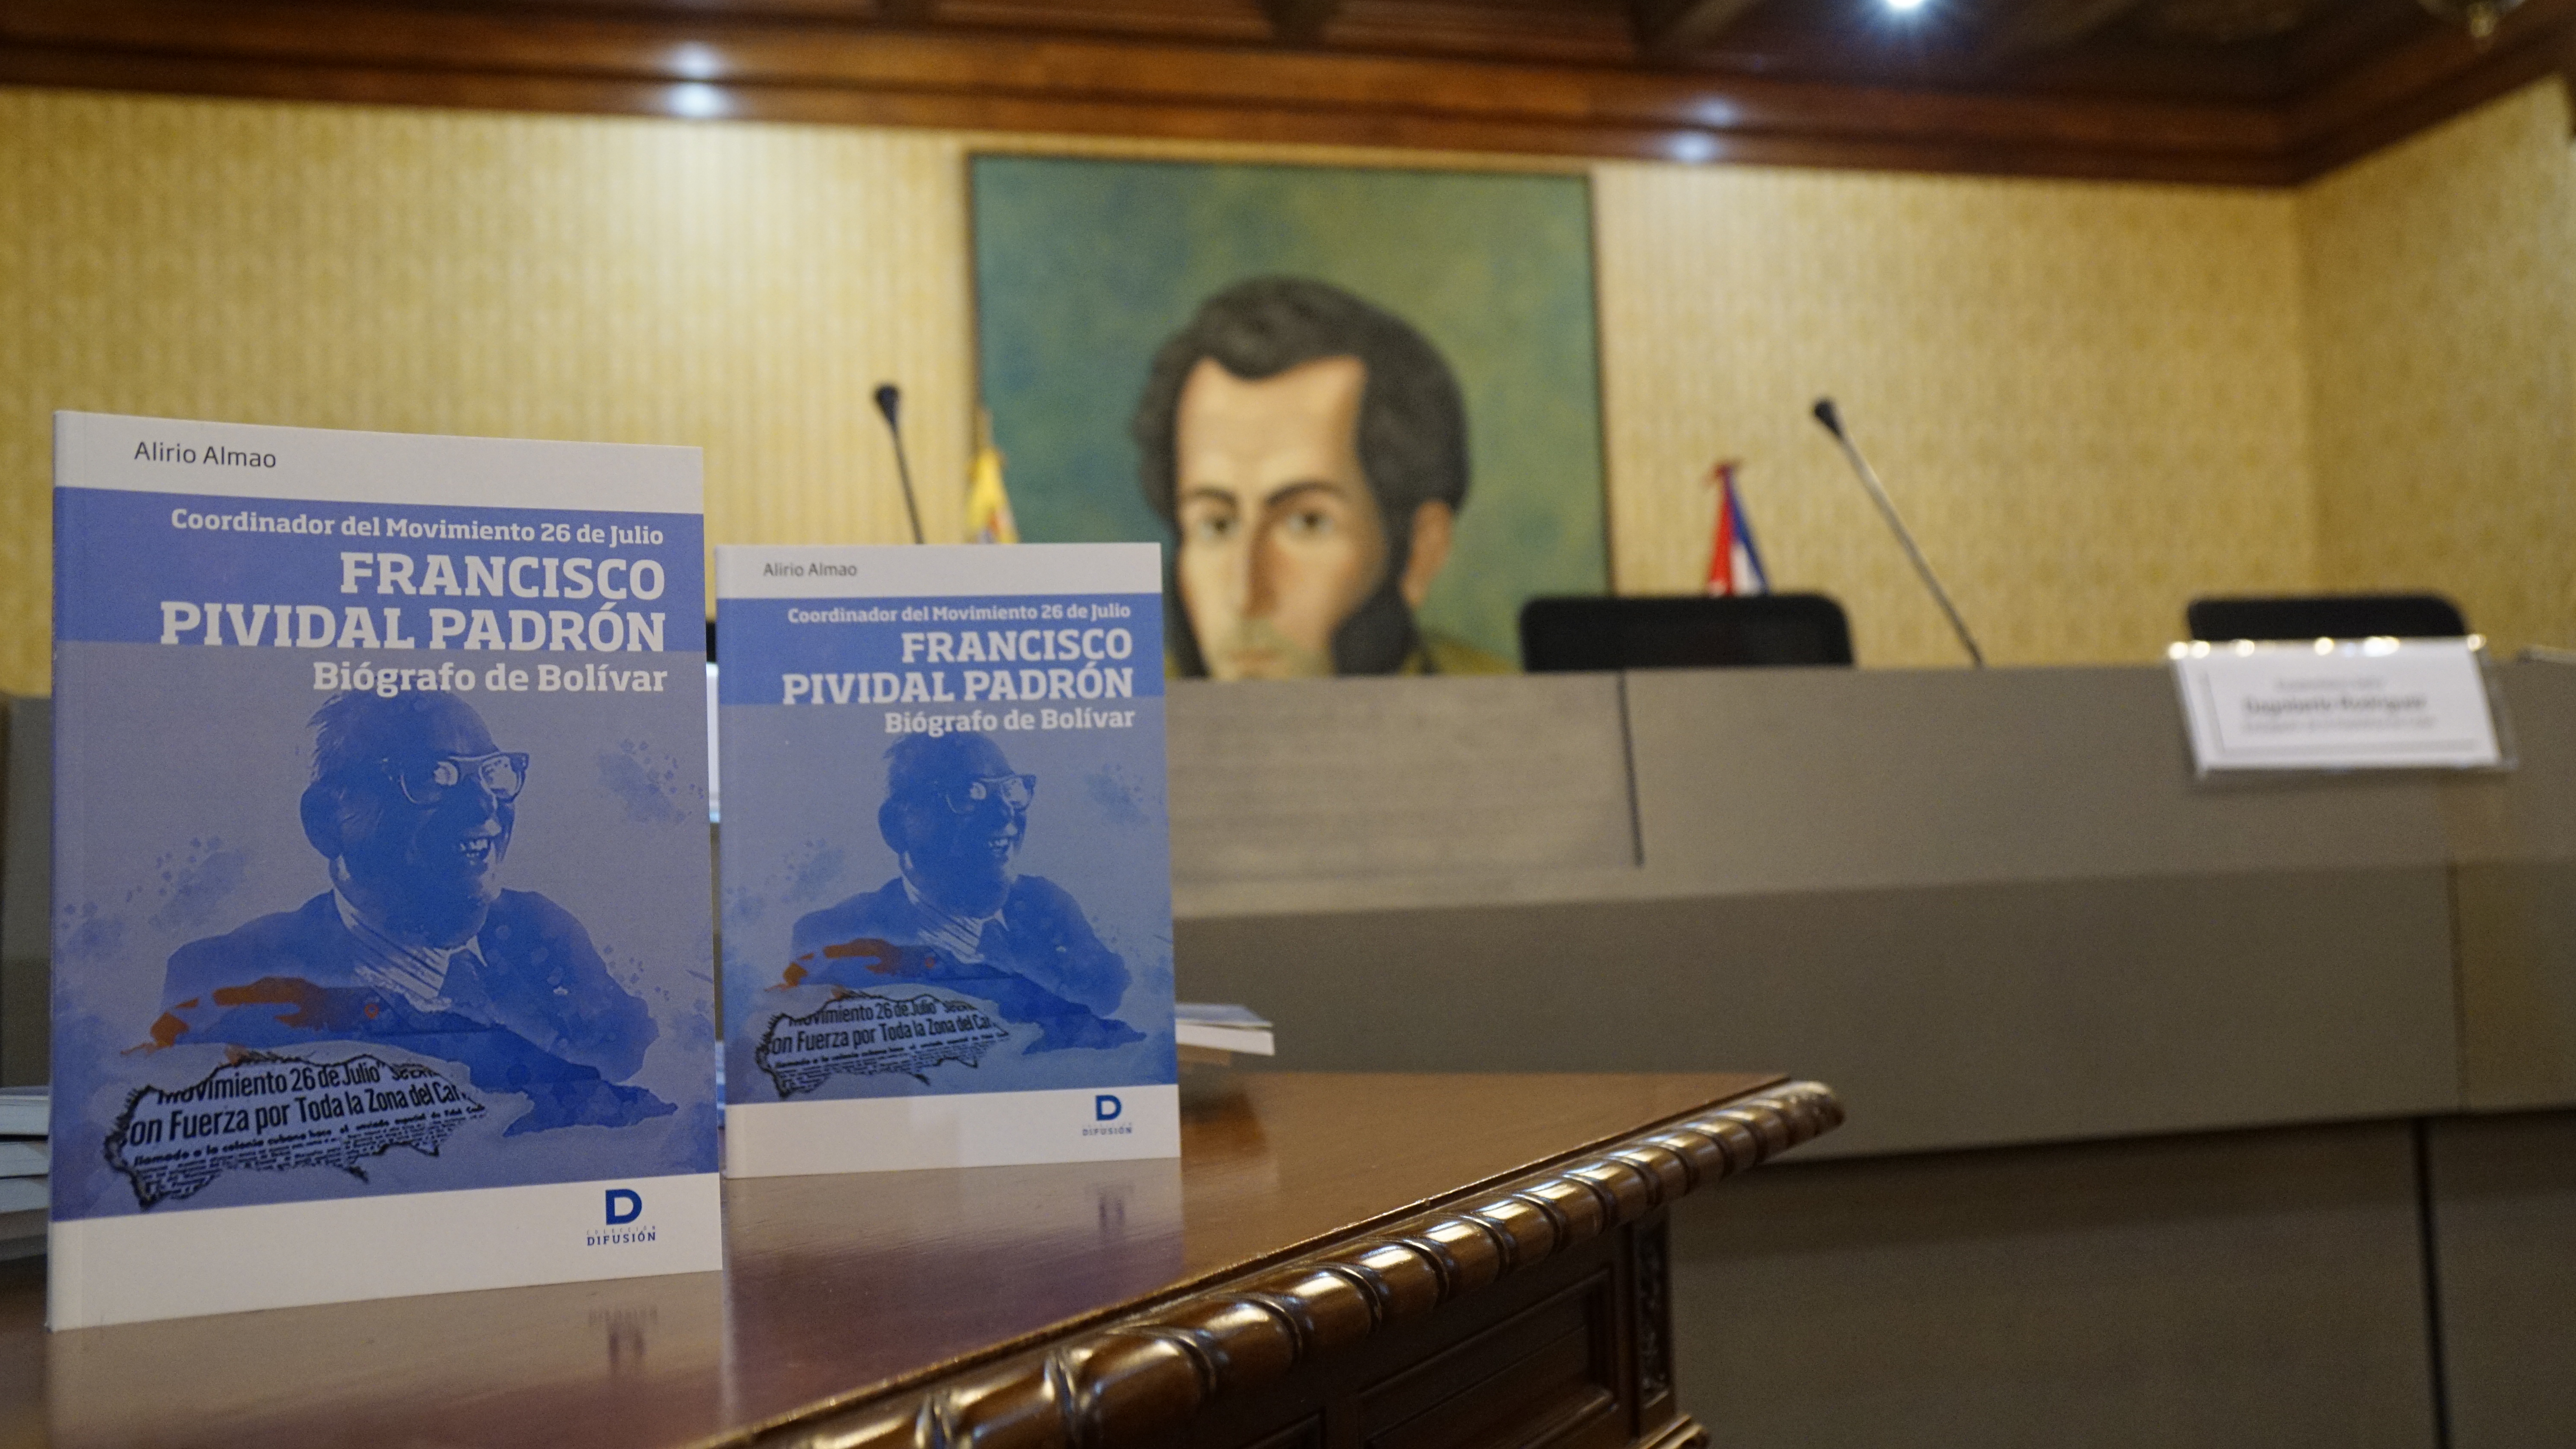 Embajador Jorge Valero presenta libro 'Francisco Pividal, biógrafo de Bolívar' en Casa amarilla